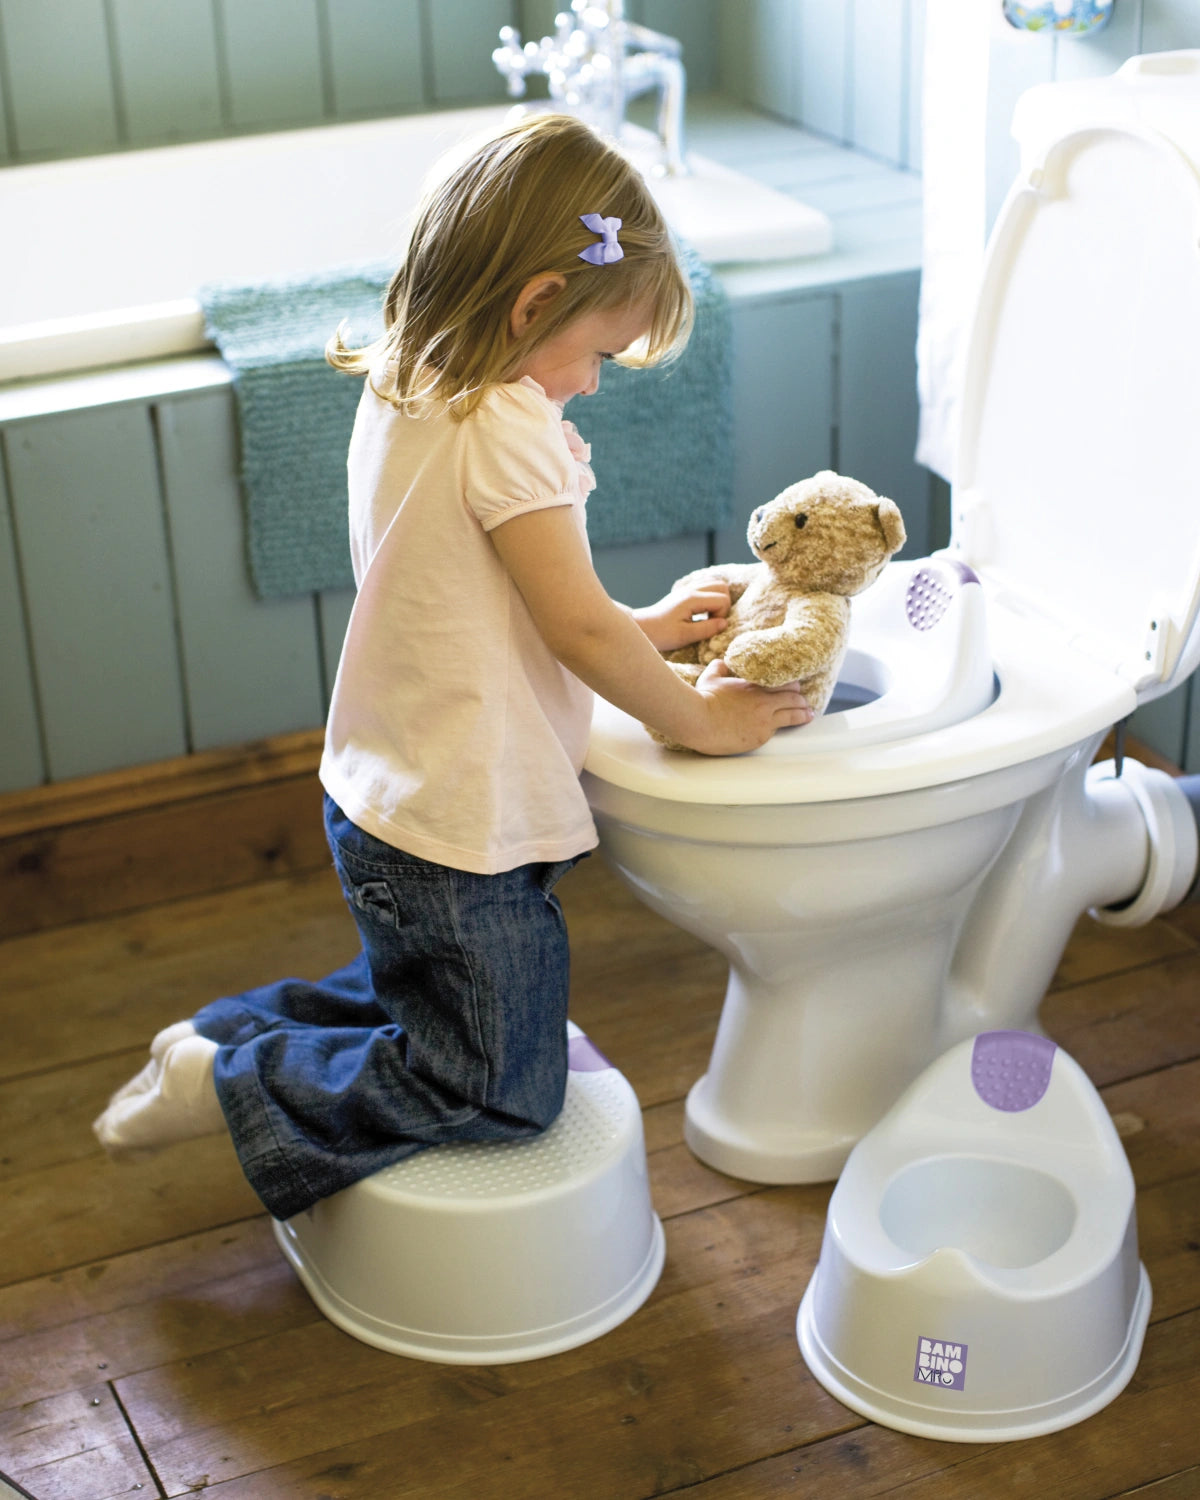 Toilet training seat - Bambino Mio (EU)